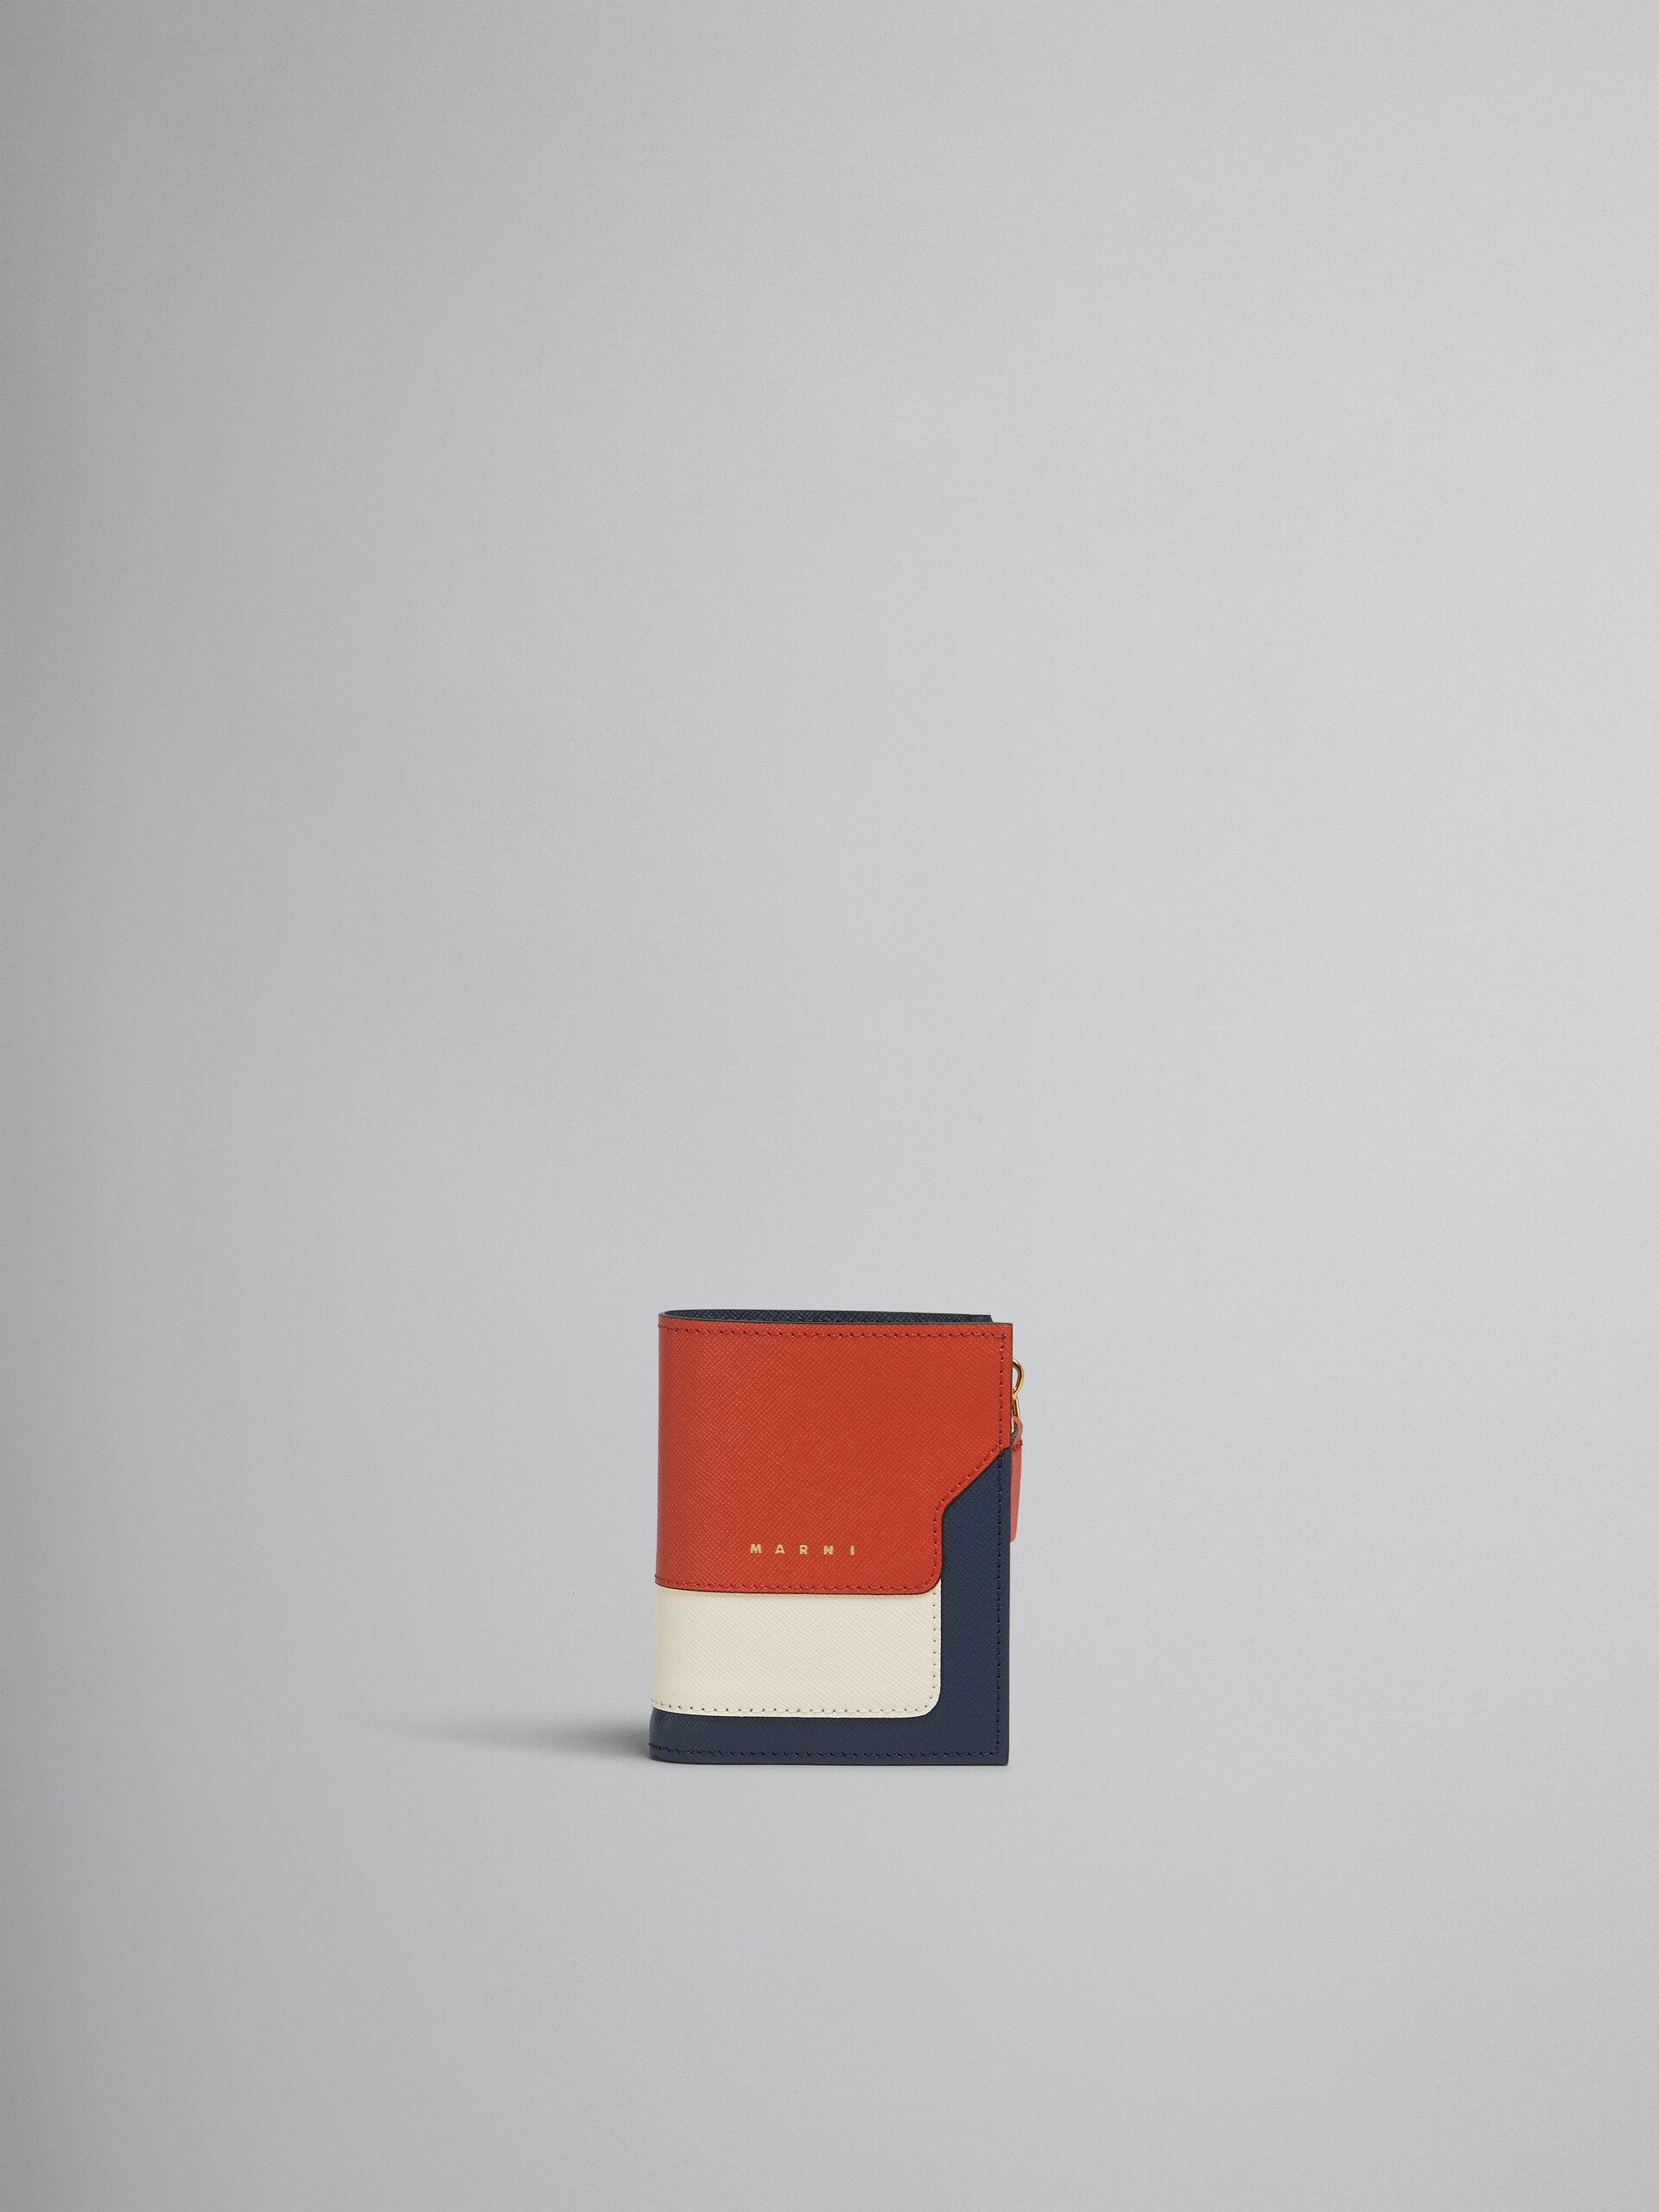 Zweifache Faltbrieftasche aus Saffiano-Leder in Orange, Cremefarben und Dunkelblau - Brieftaschen - Image 1